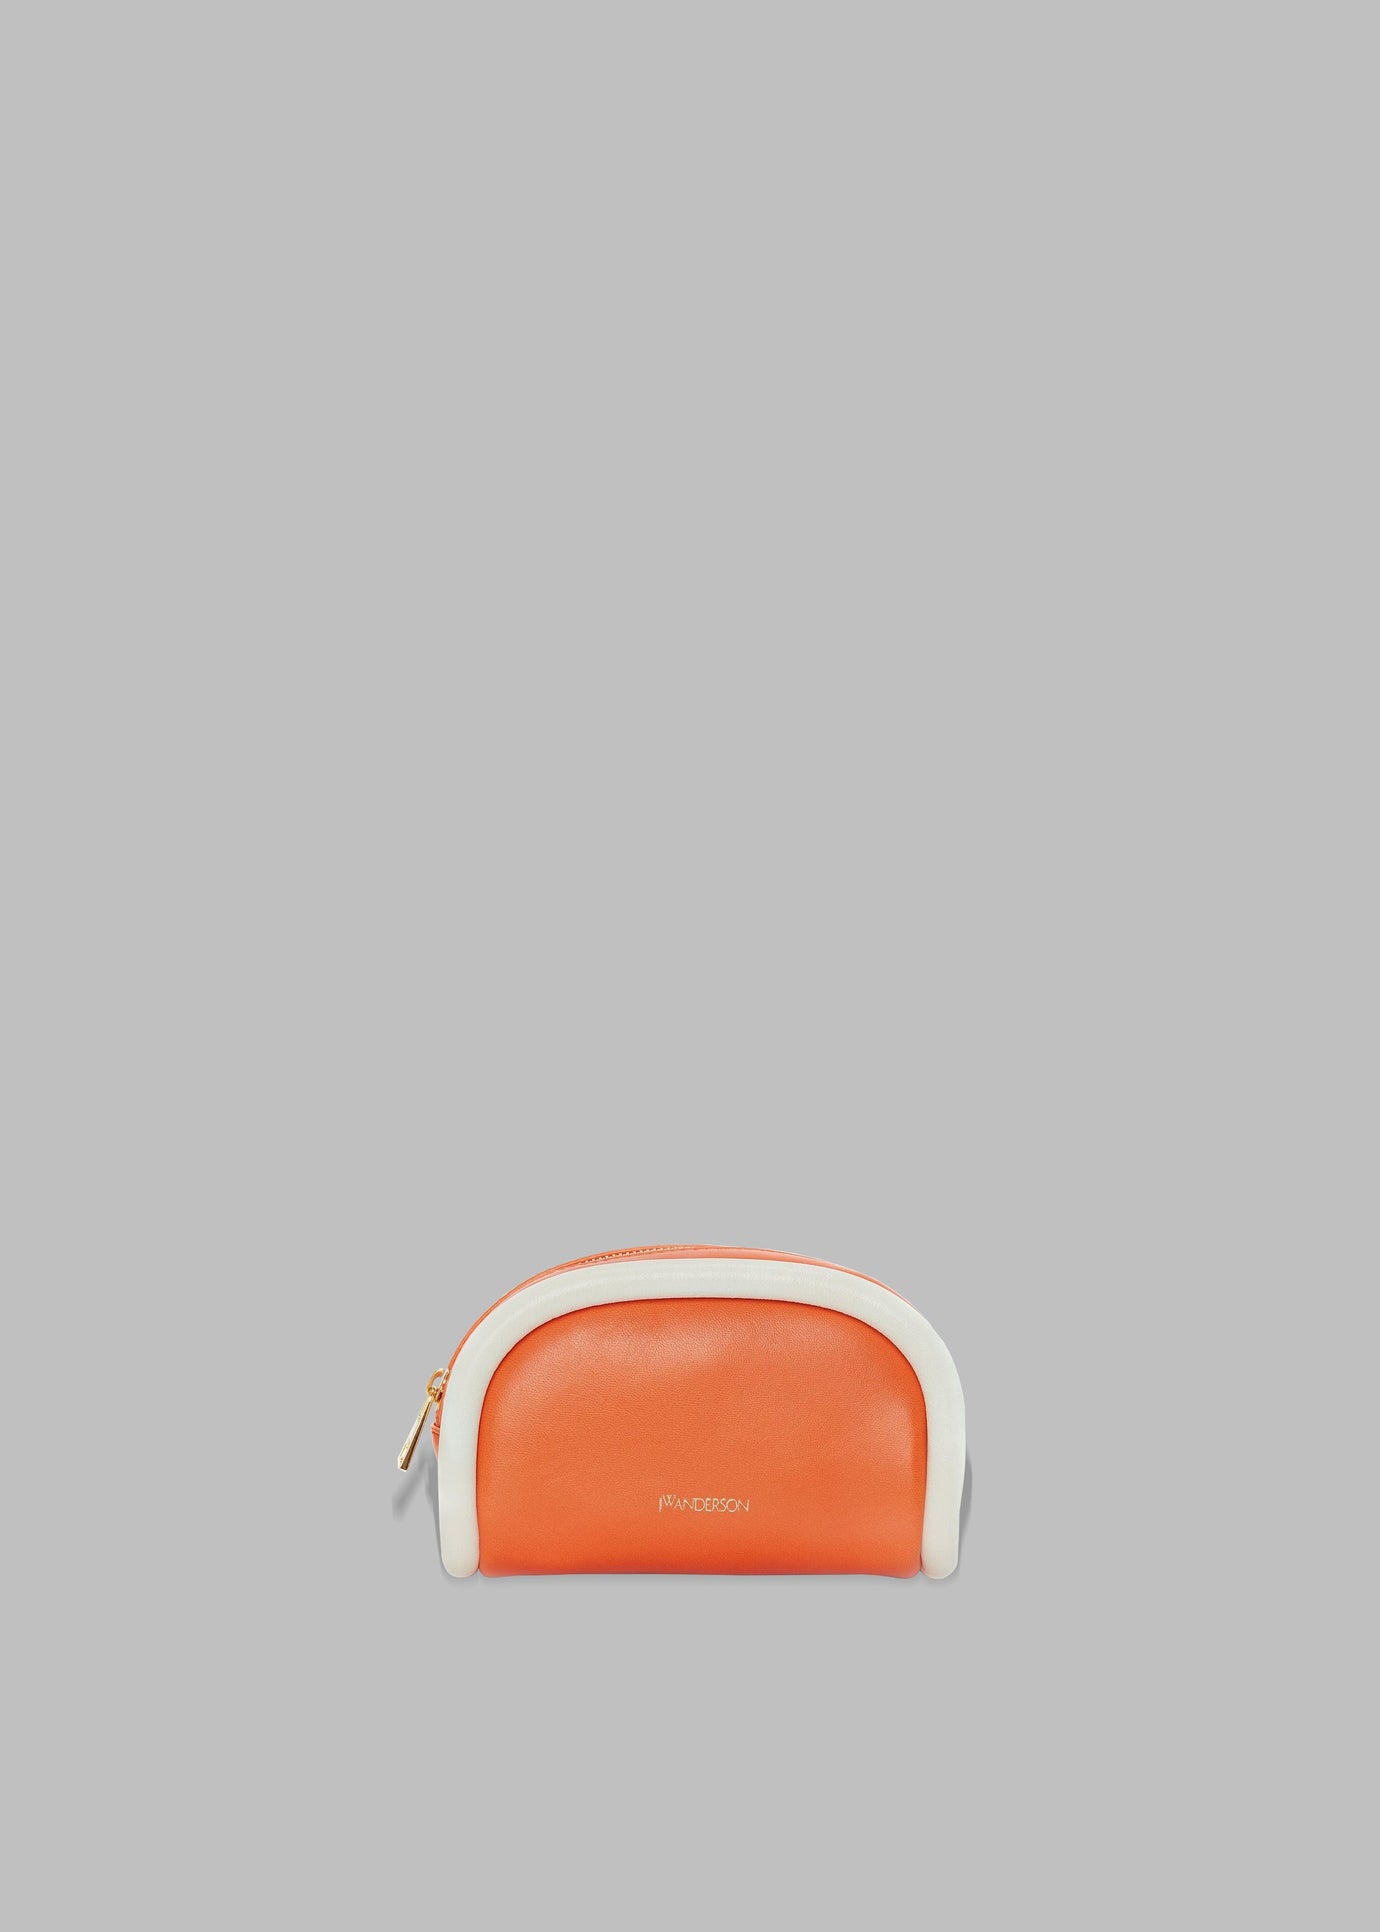 JW Anderson Small Leather Bumper-Pouch - Orange/White